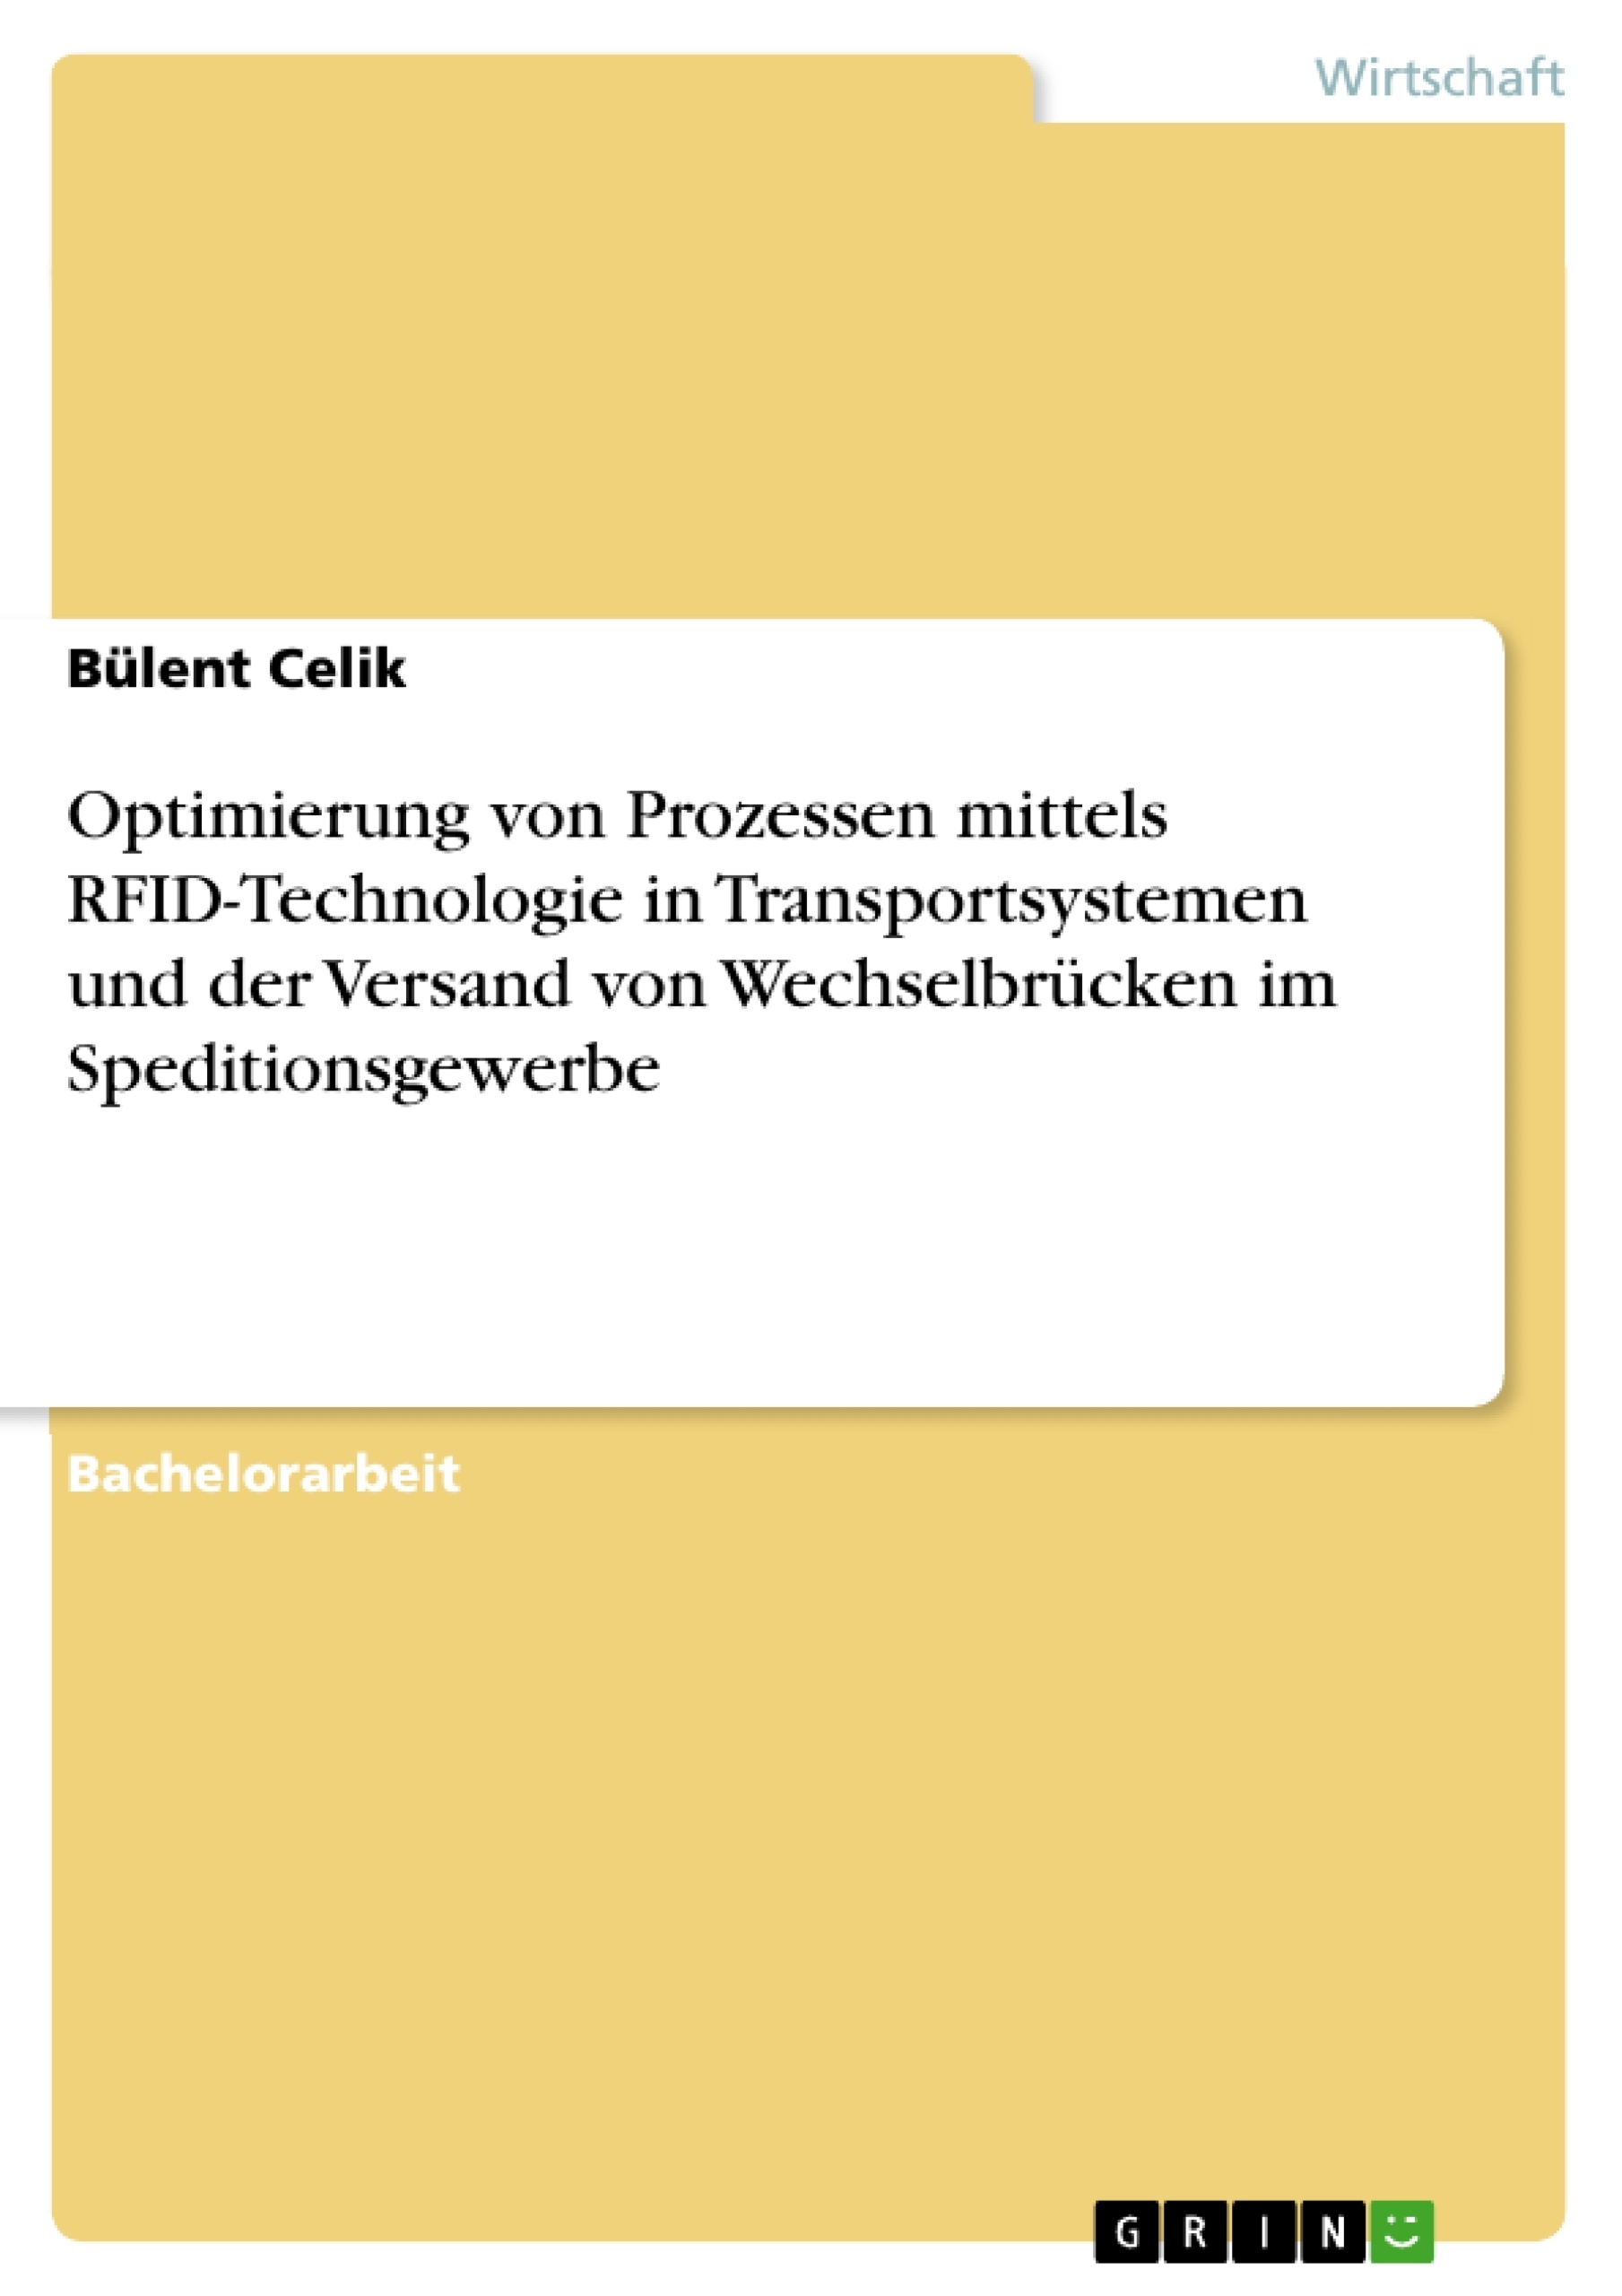 Título: Optimierung von Prozessen mittels RFID-Technologie in Transportsystemen und der Versand von Wechselbrücken im Speditionsgewerbe